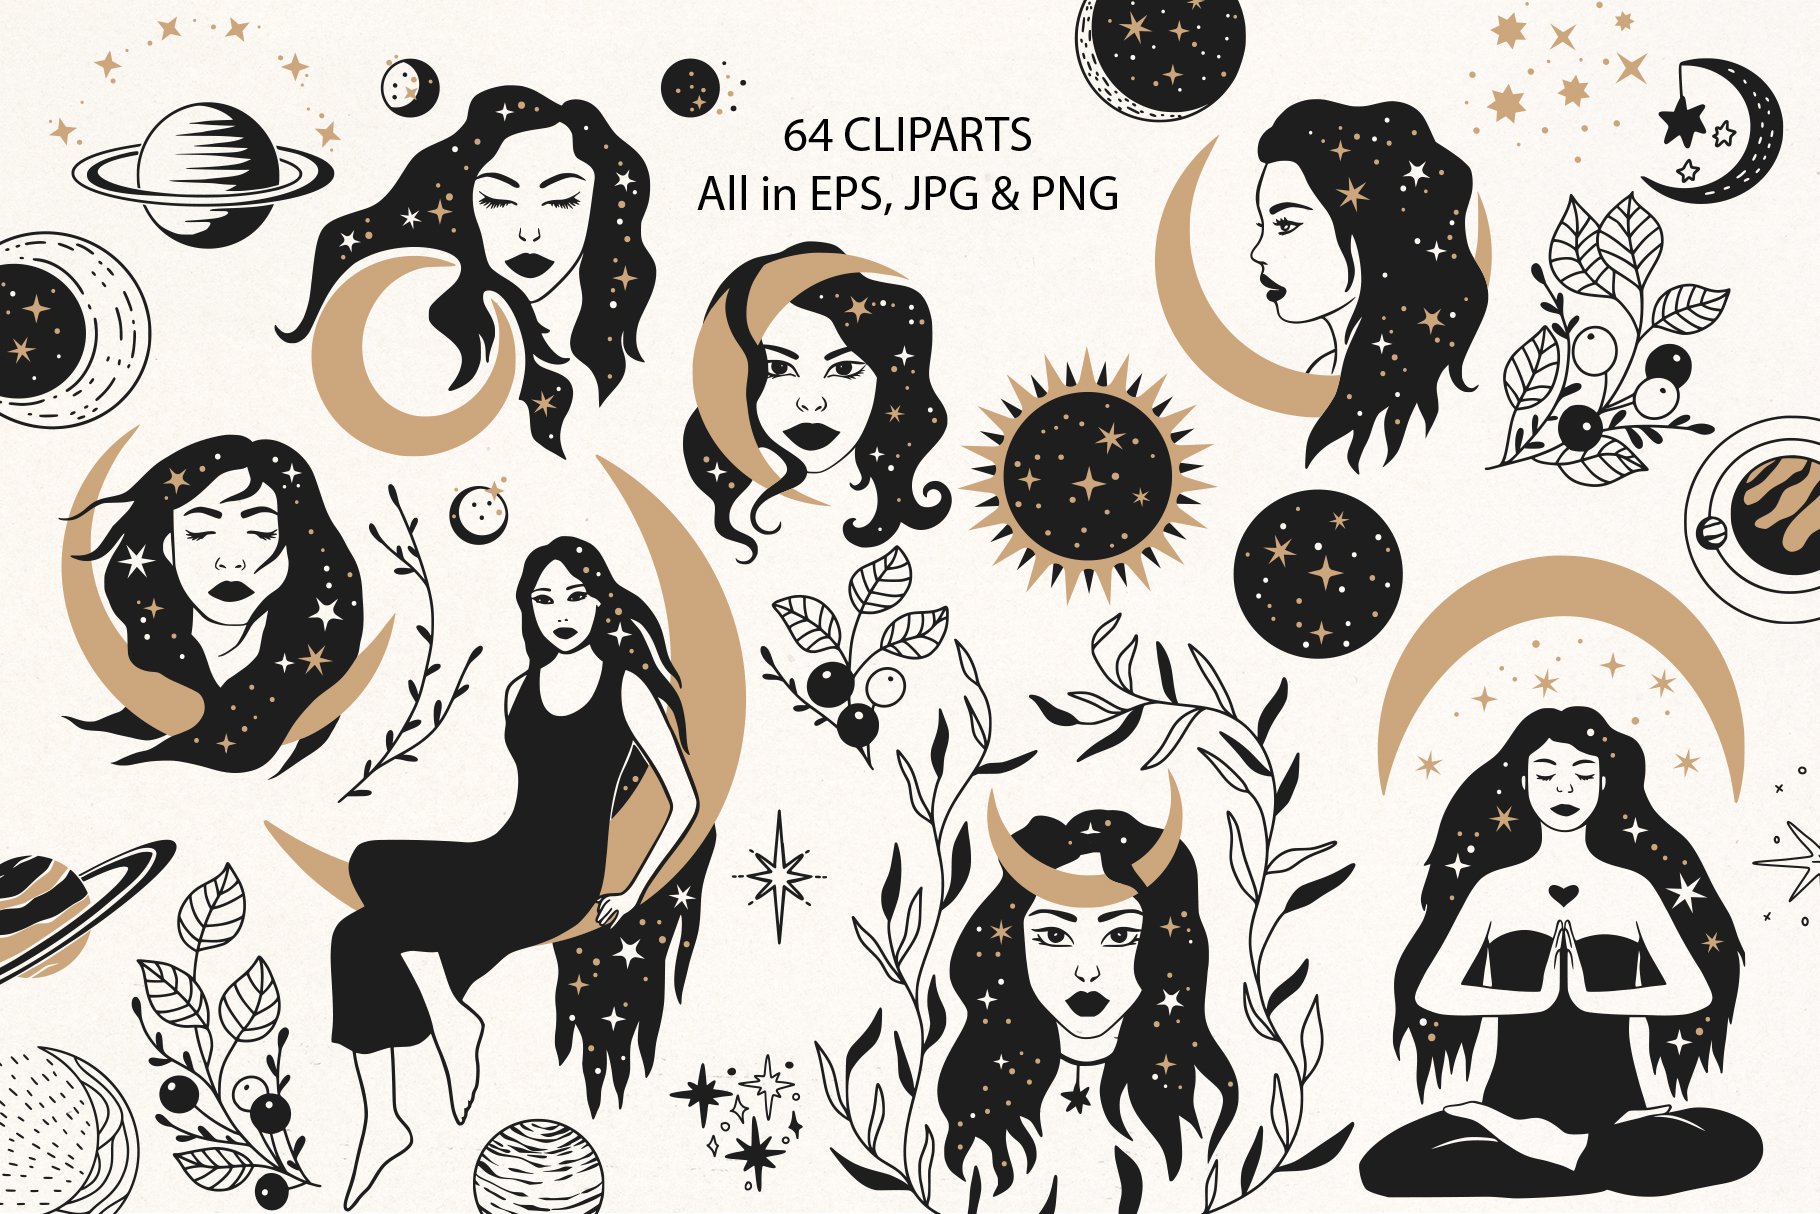 神秘占星术天体月亮星星蝴蝶女性头像手绘剪贴画矢量图案设计素材